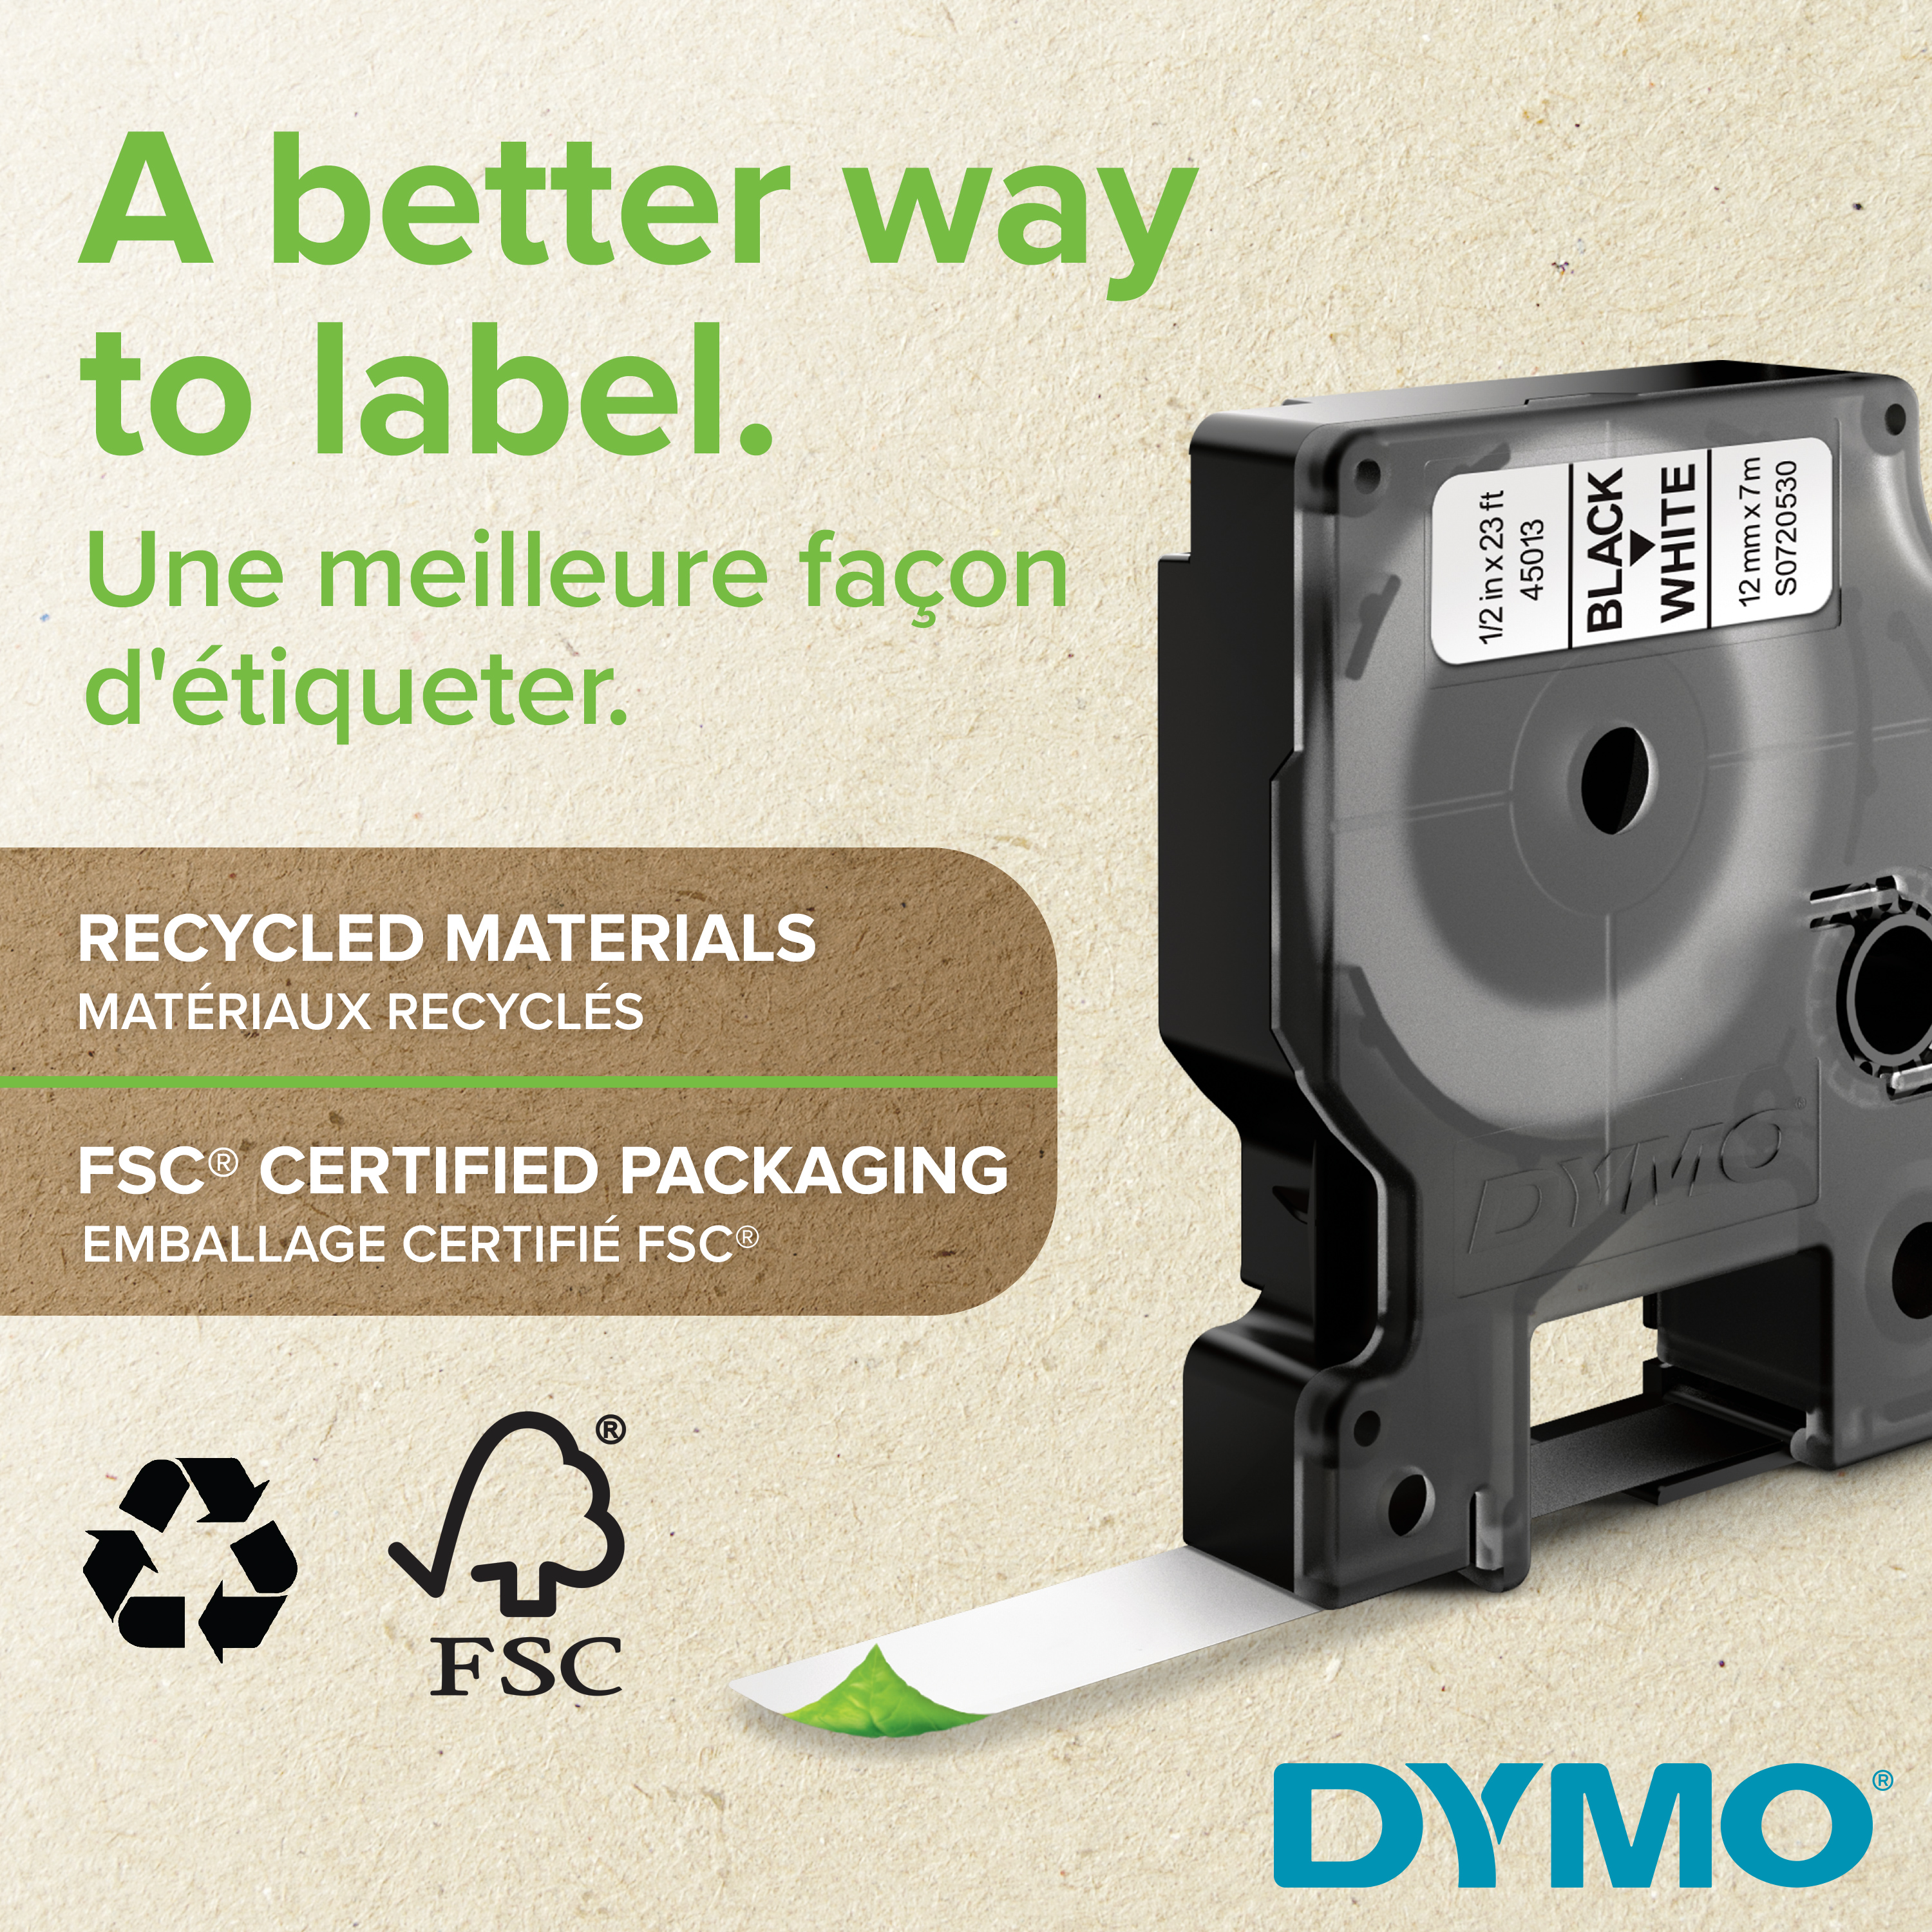 DYMO | LabelWriter 5XL | Etikettendrucker für bis zu 53 Etiketten/Minute | USB & Ethernet | 300 dpi. Thermodirekt | für Etiketten bis 102mm Breite